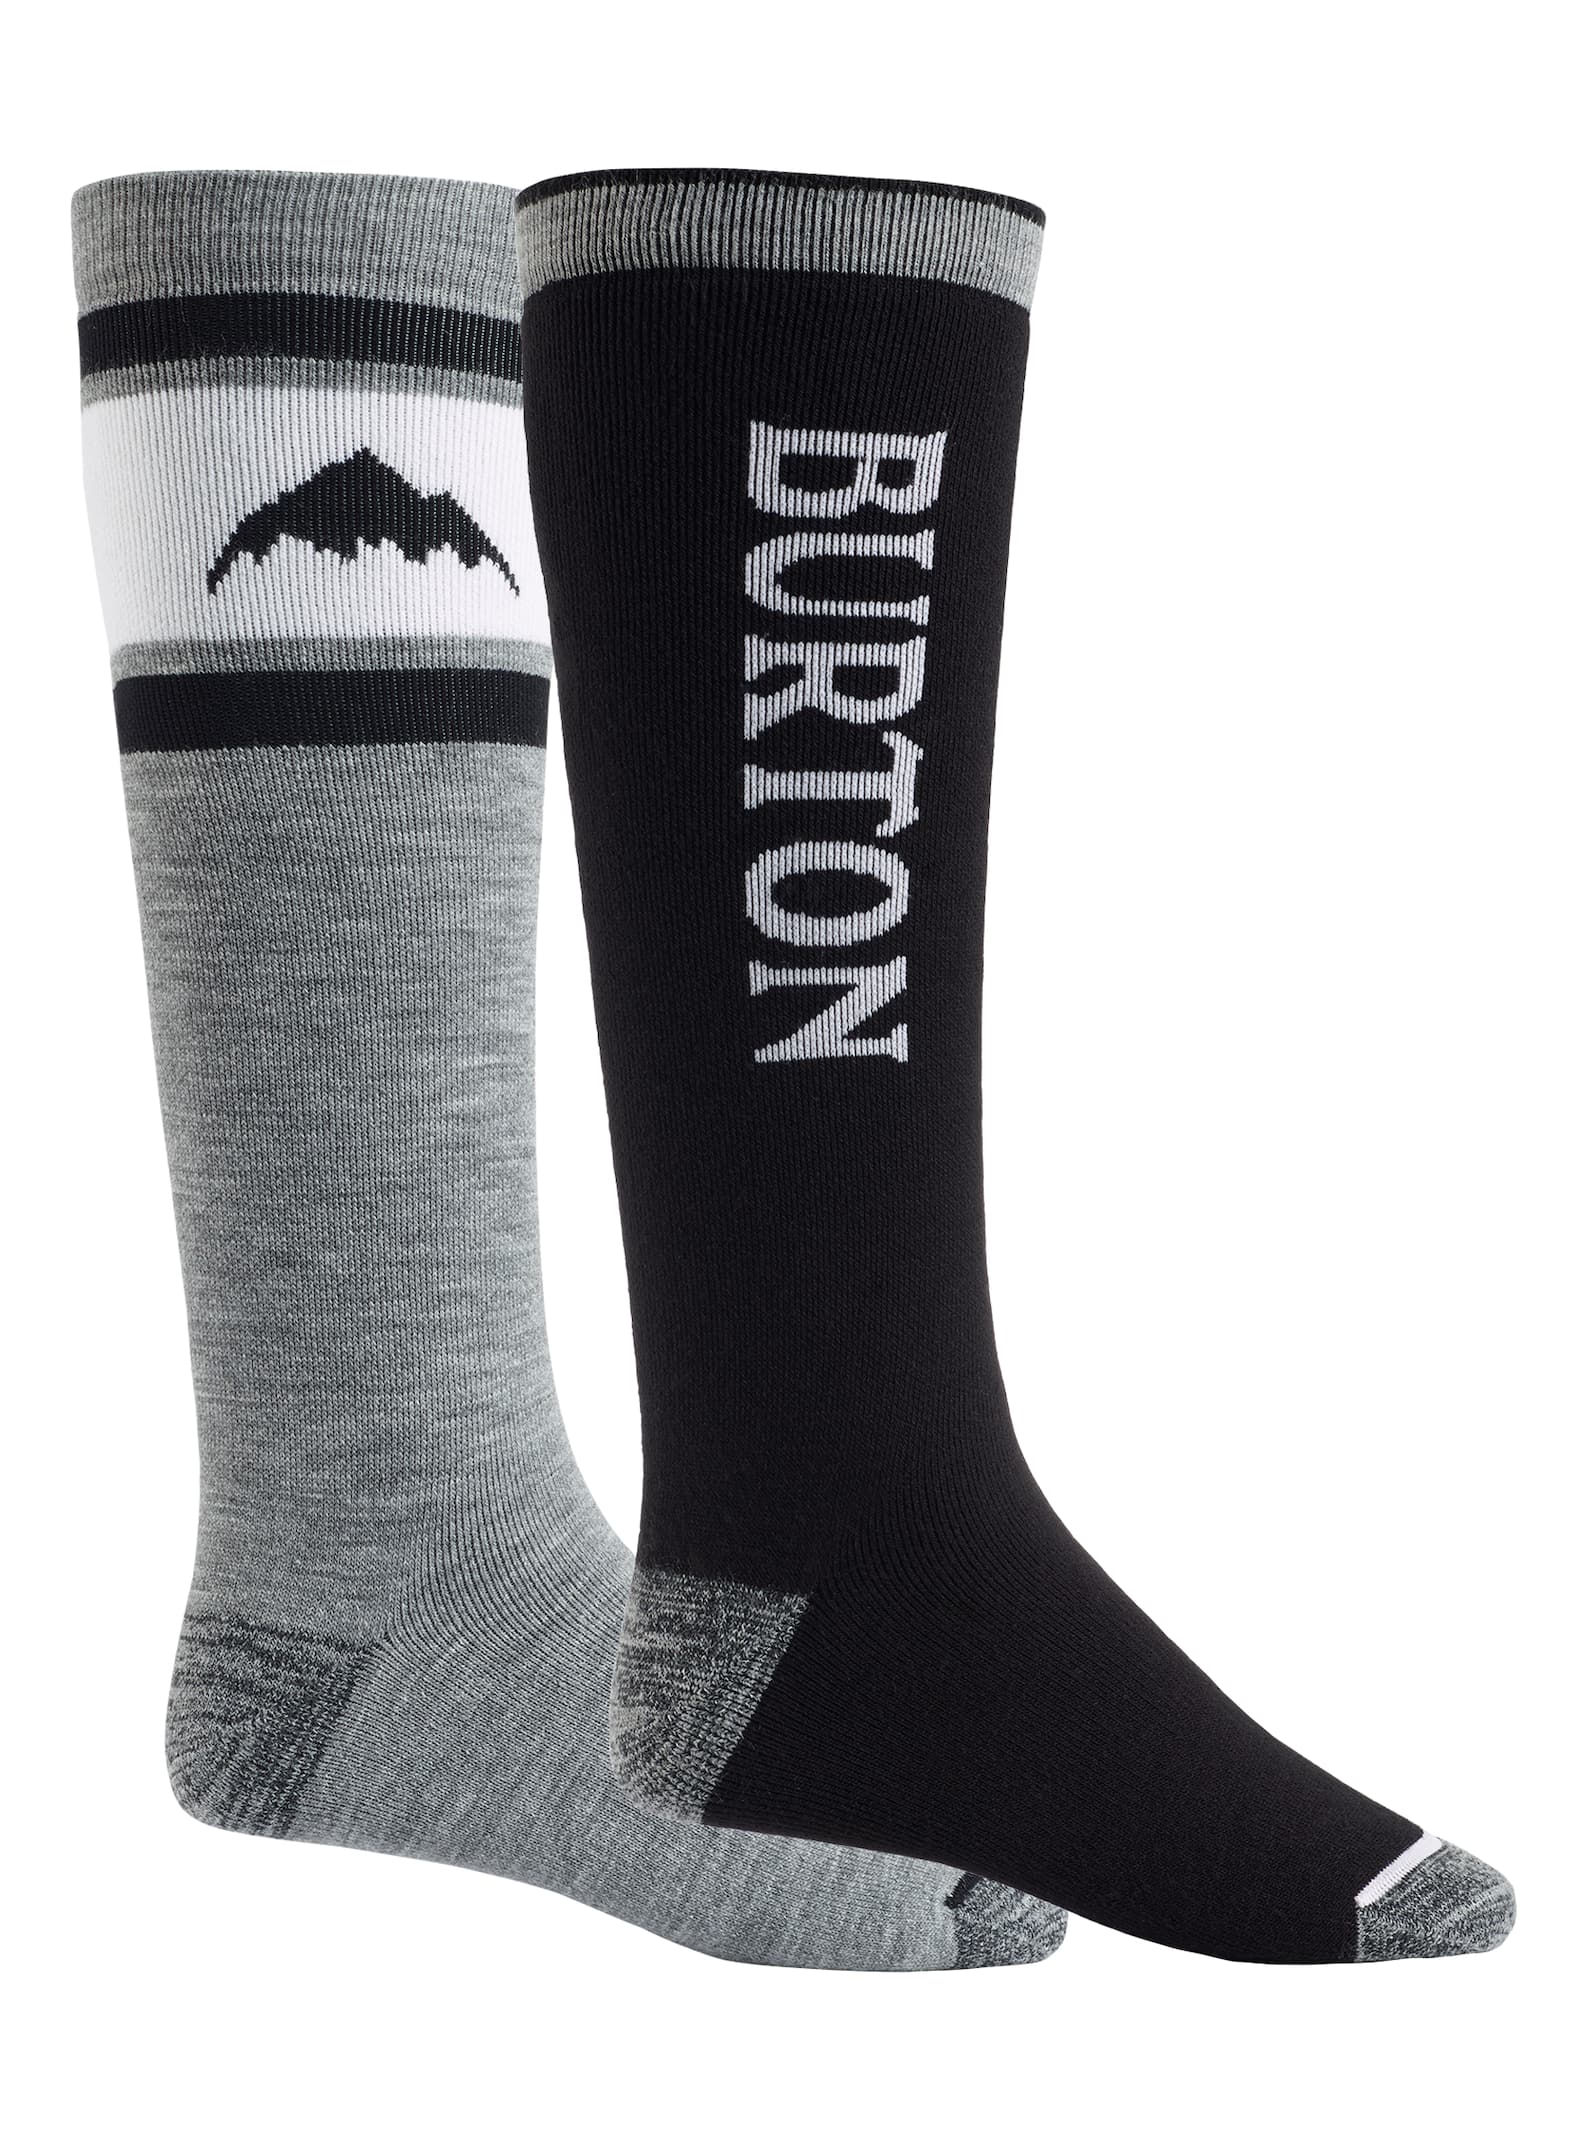 Burton Snowboard Socks Size Chart